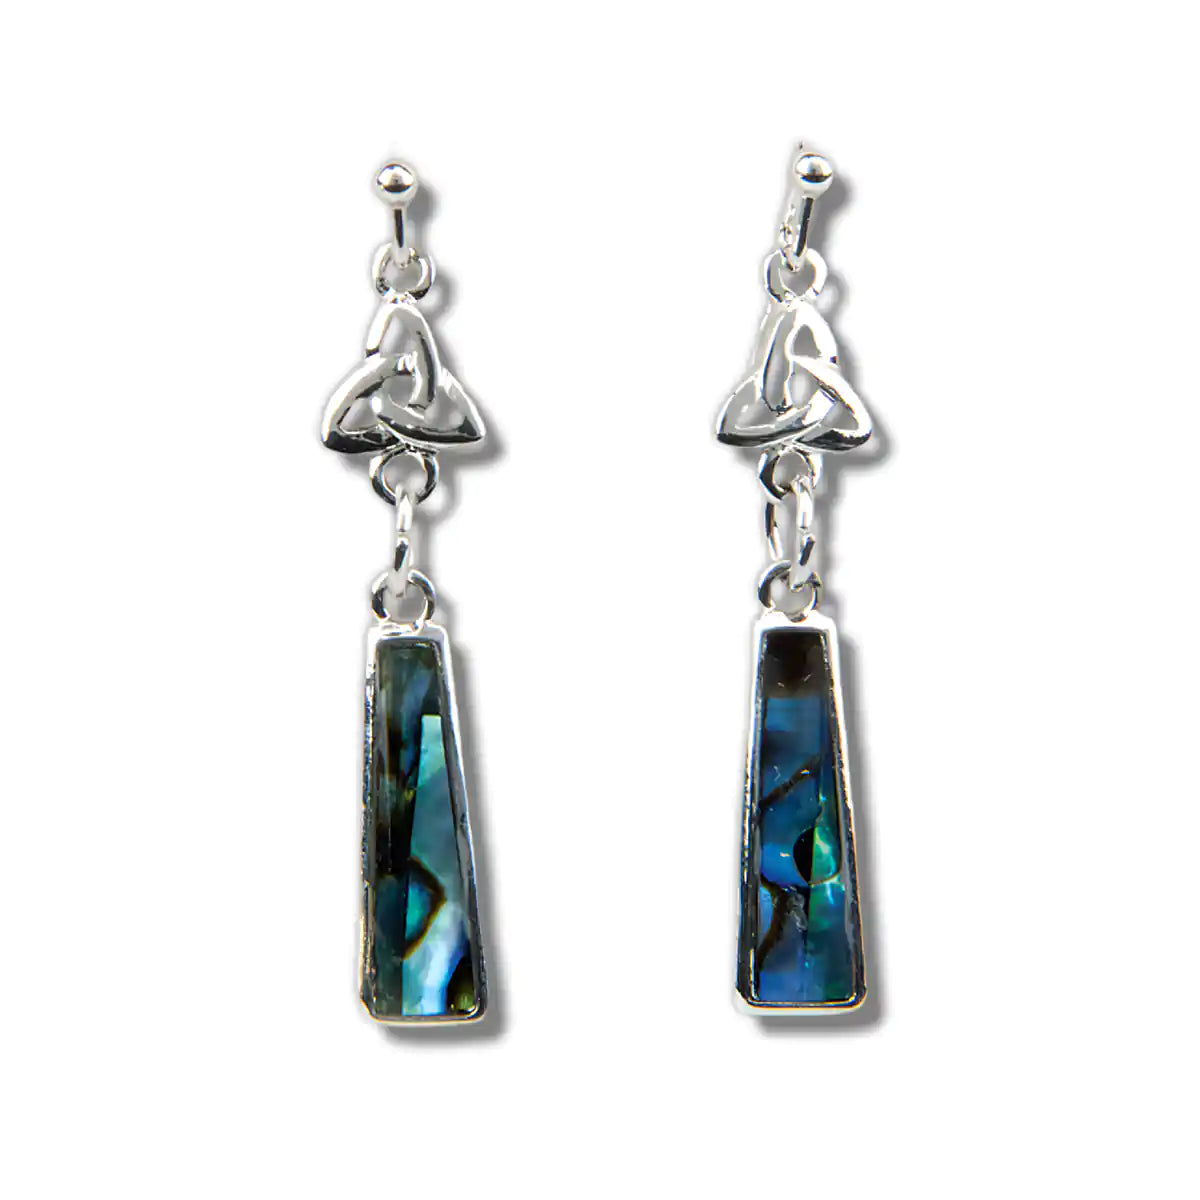 Glacier pearle celtic drop earrings